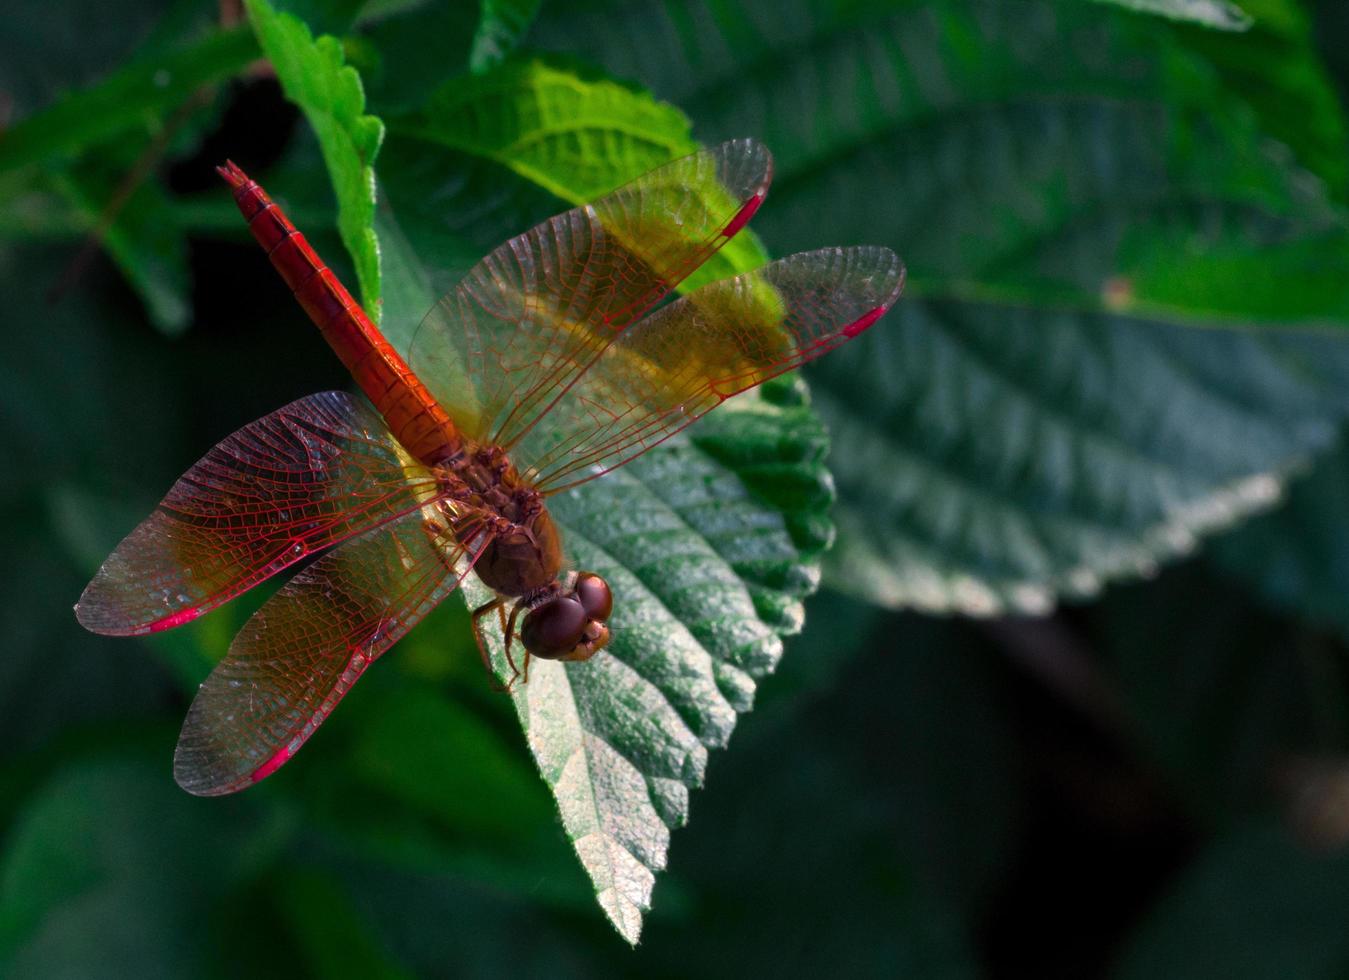 hermosa libélula roja muestra detalles de alas en una hoja verde como fondo natural el día del sol. insecto animal en la naturaleza. libélula roja de primer plano. indicador de calidad del agua. concepto conmemorativo. salvar mundo foto